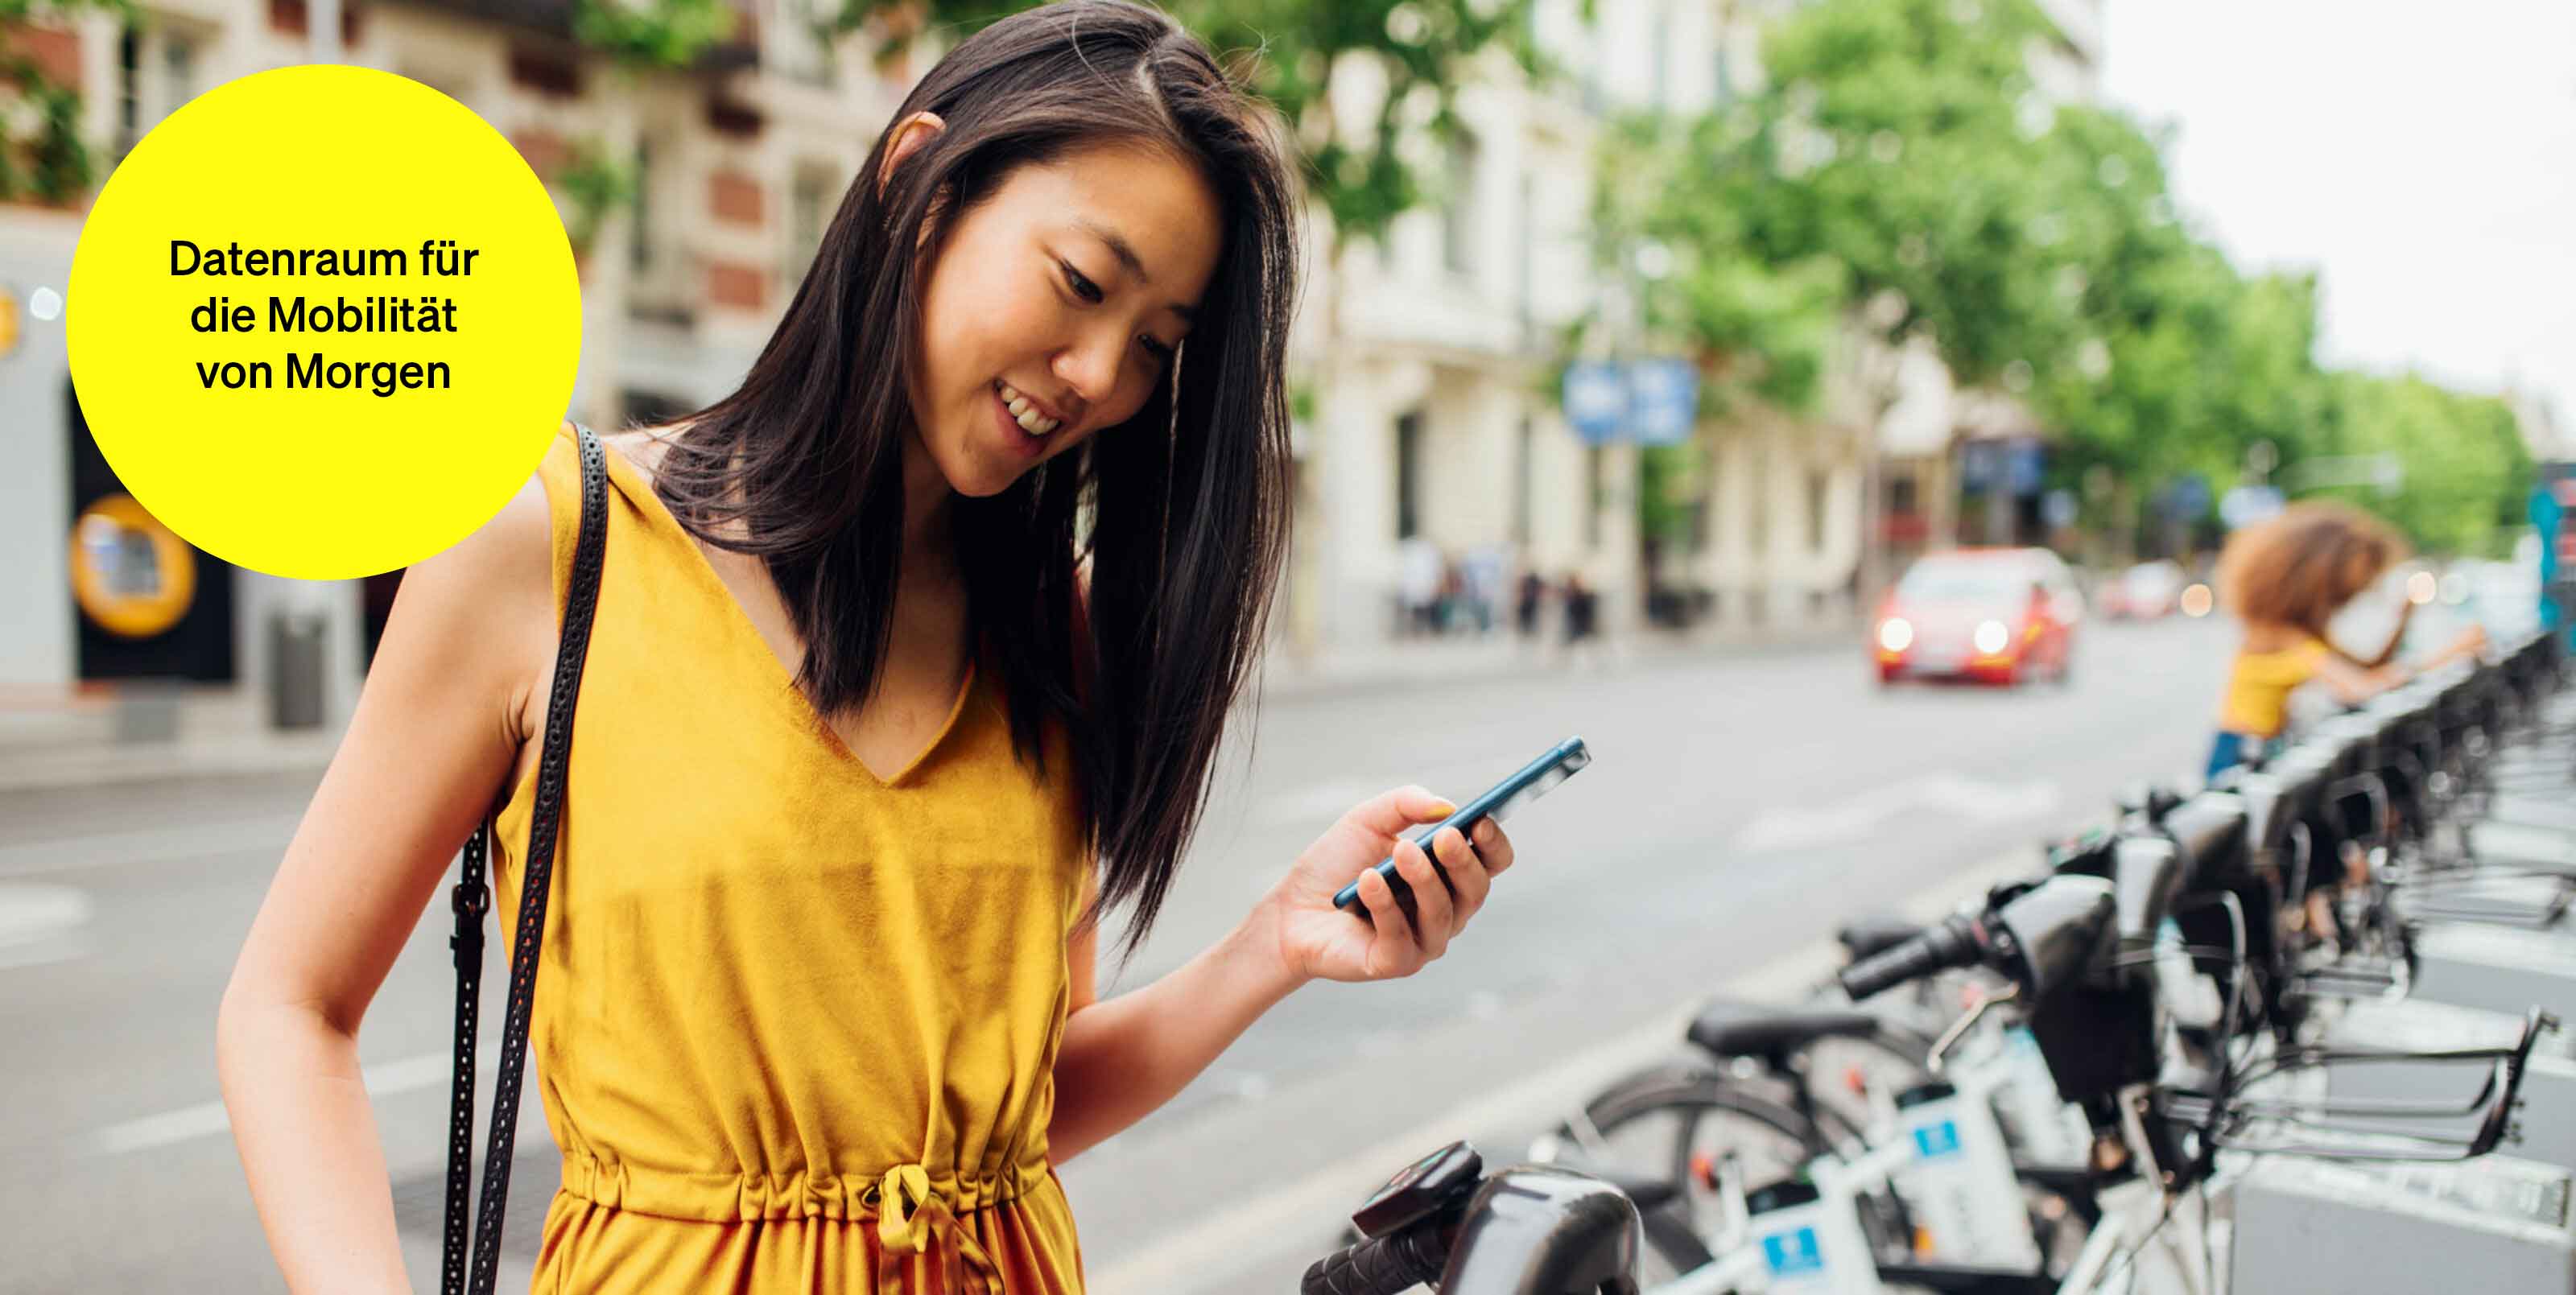 Frau mit Handy in der Hand an einer Bikesharing-Station – Textbaustein in runder Kachel: Datenraum für die Mobilität von Morgen